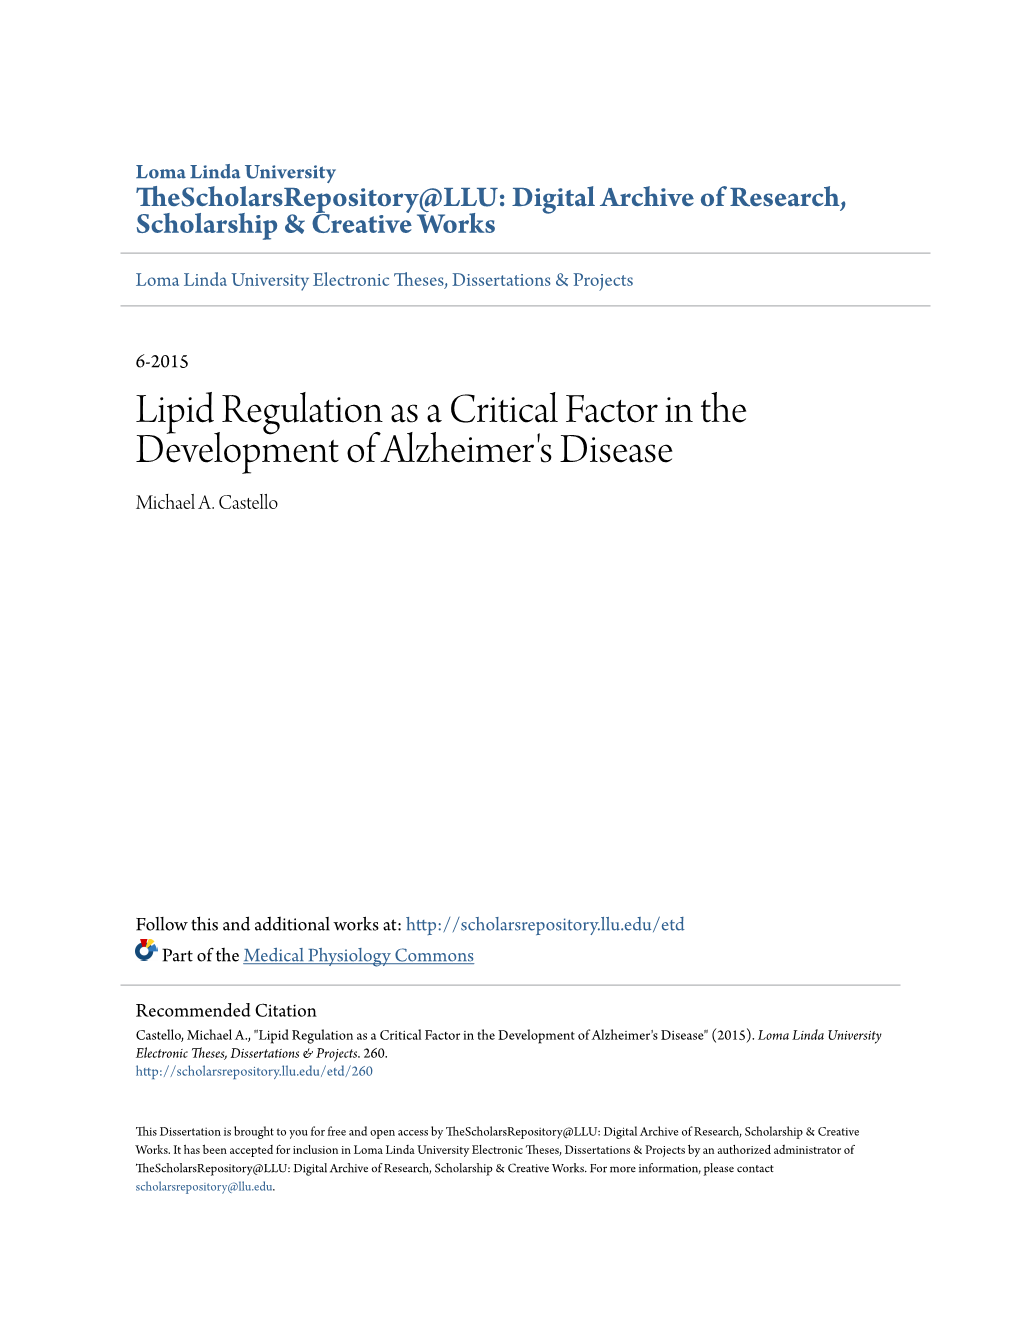 Lipid Regulation As a Critical Factor in the Development of Alzheimer's Disease Michael A